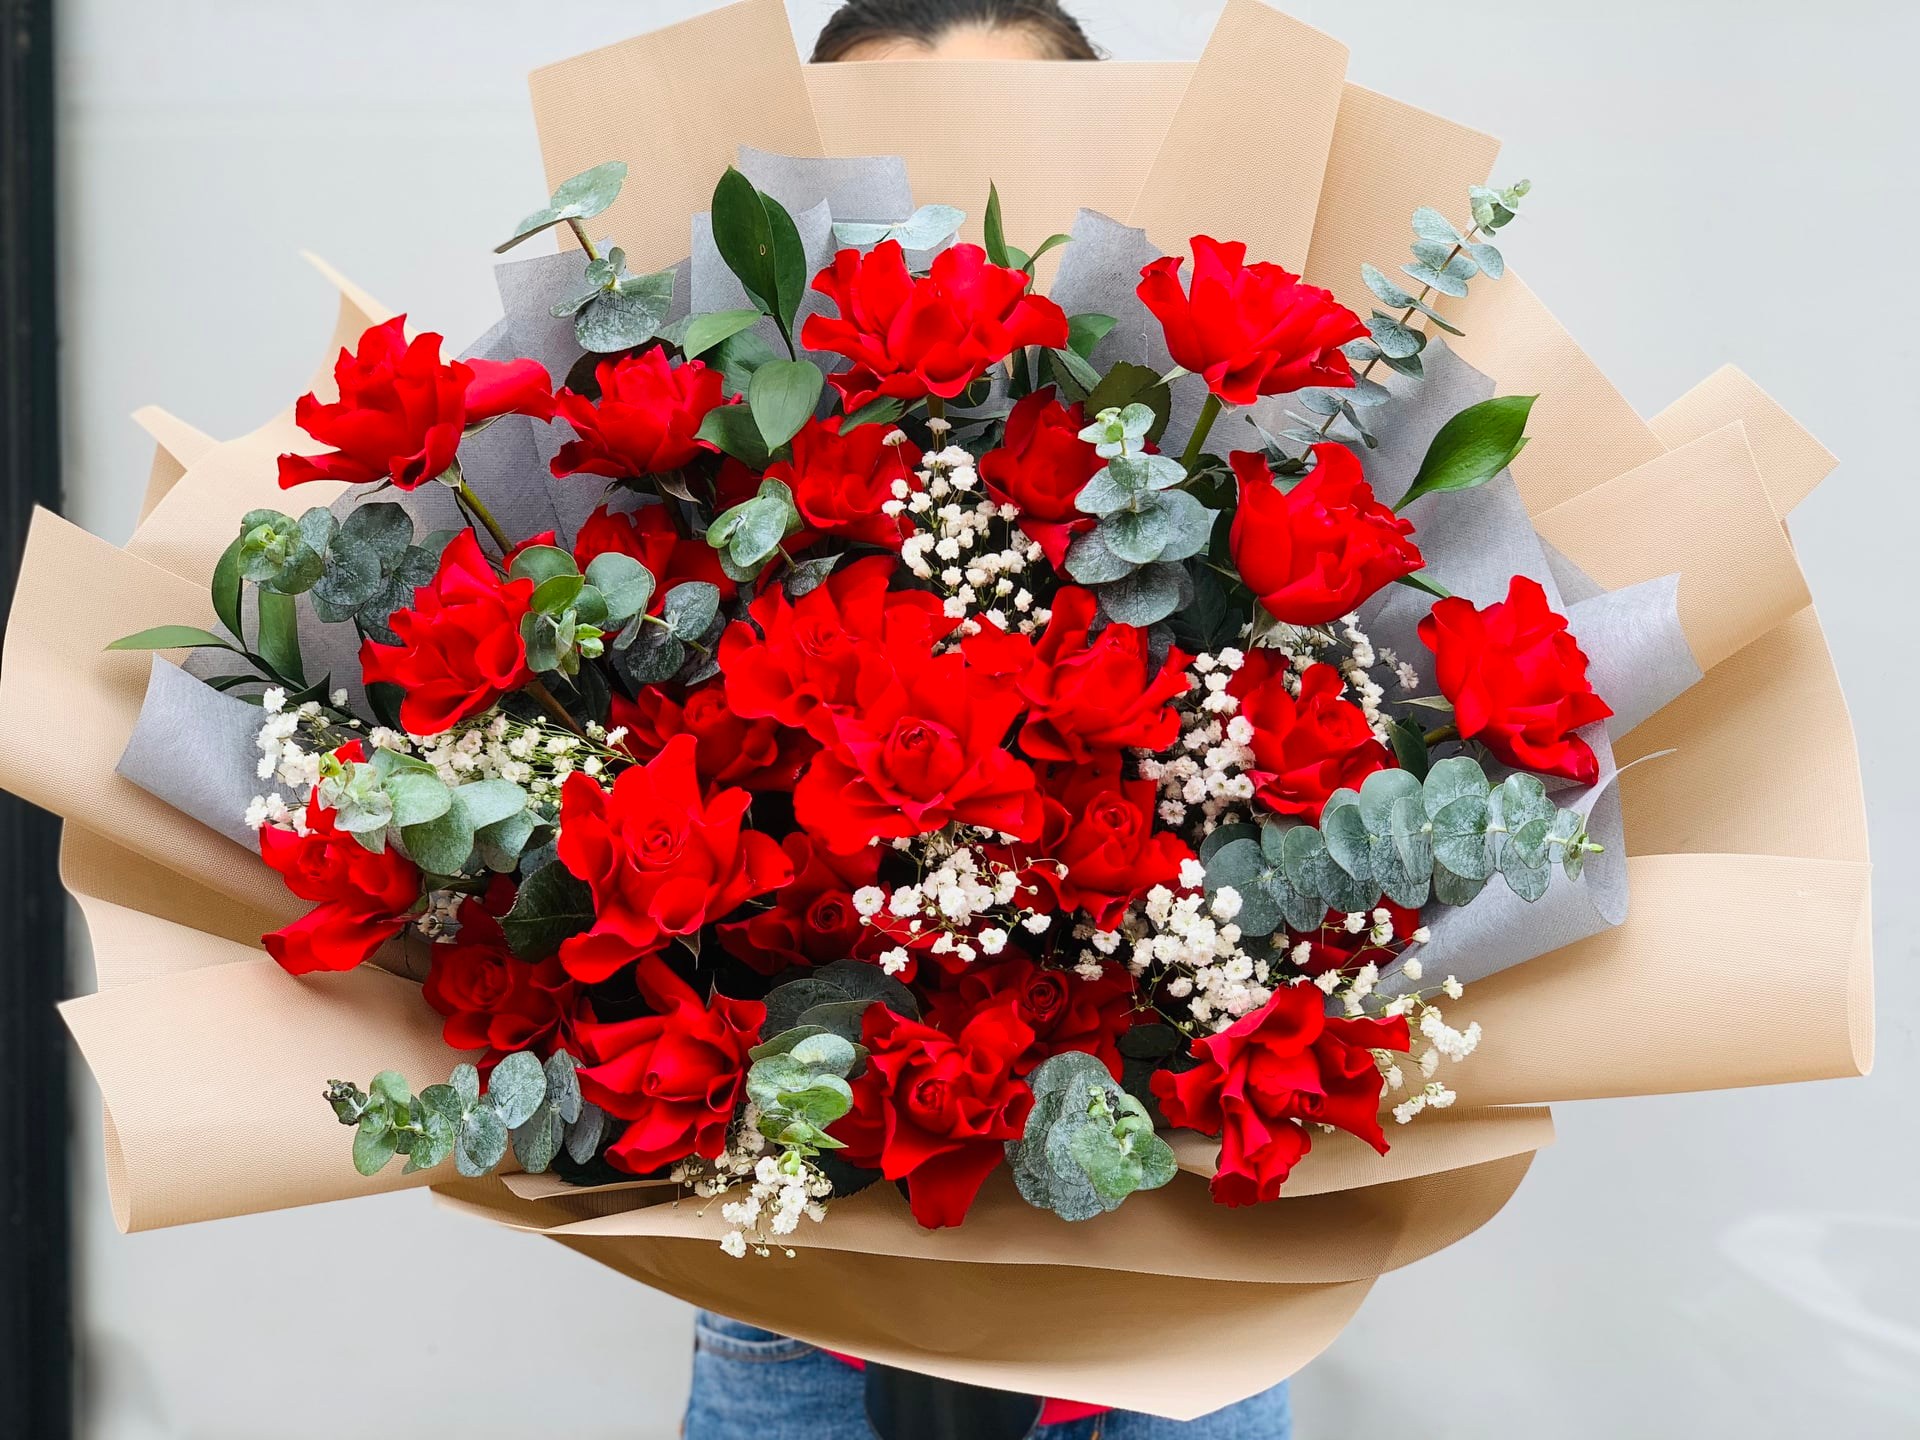 Bó hoa tình yêu làm được làm từ những bông hoa tươi tuyệt đẹp tại tiệm hoa Thanh Xuân